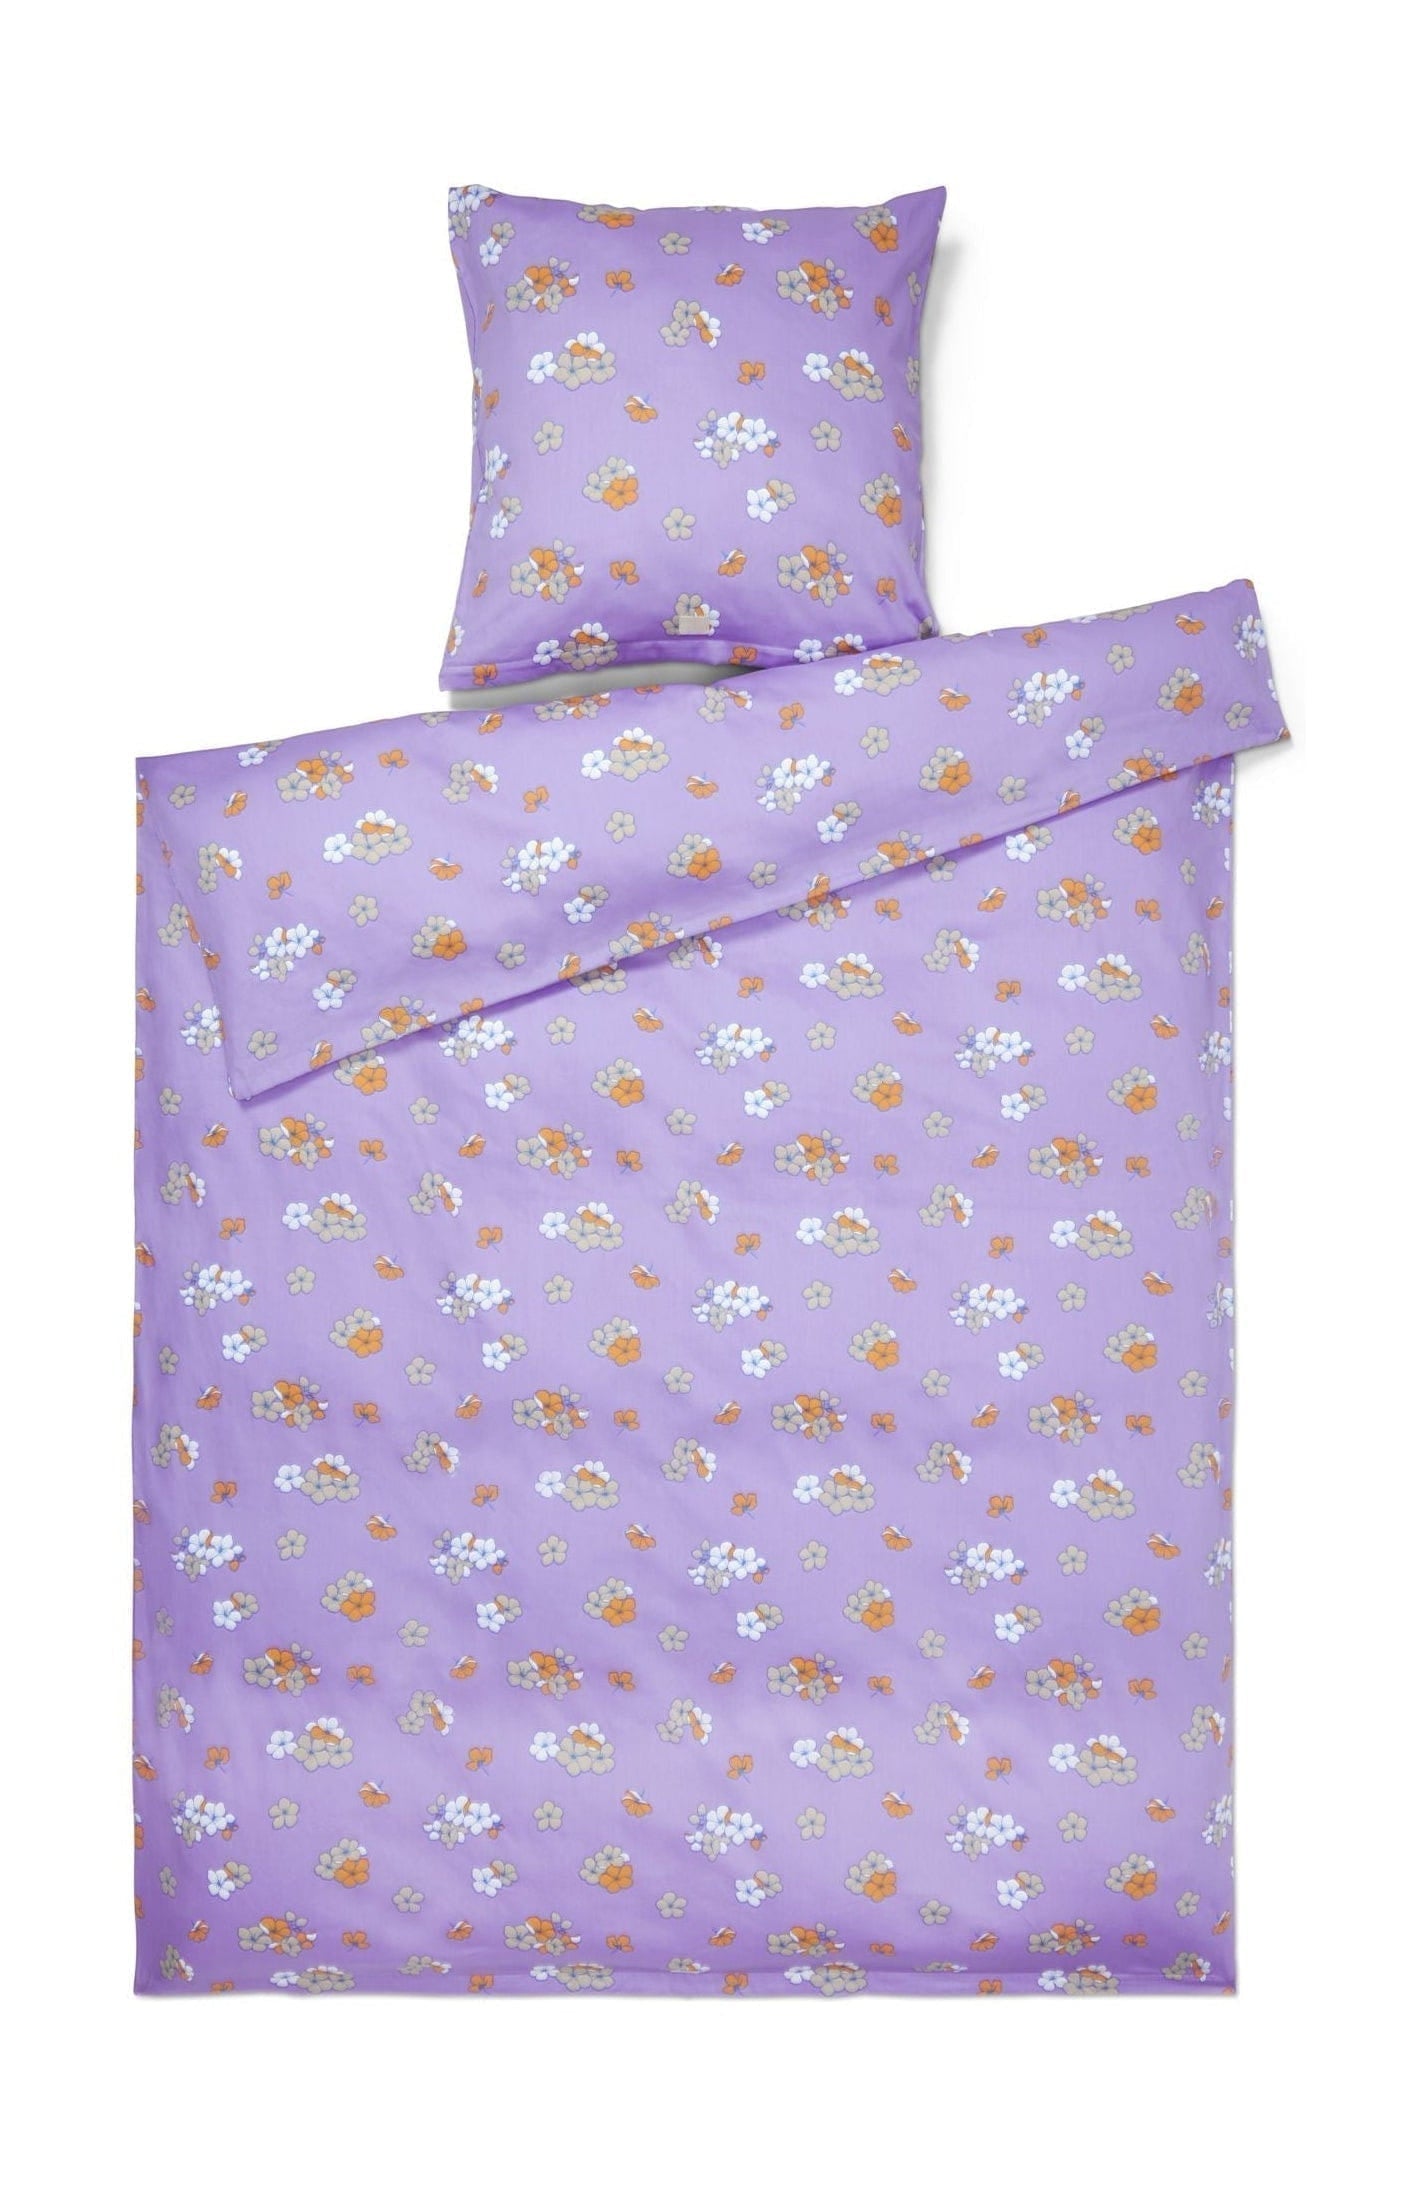 Juna Grand příjemně lůžko lůžko 140x200 cm, fialová